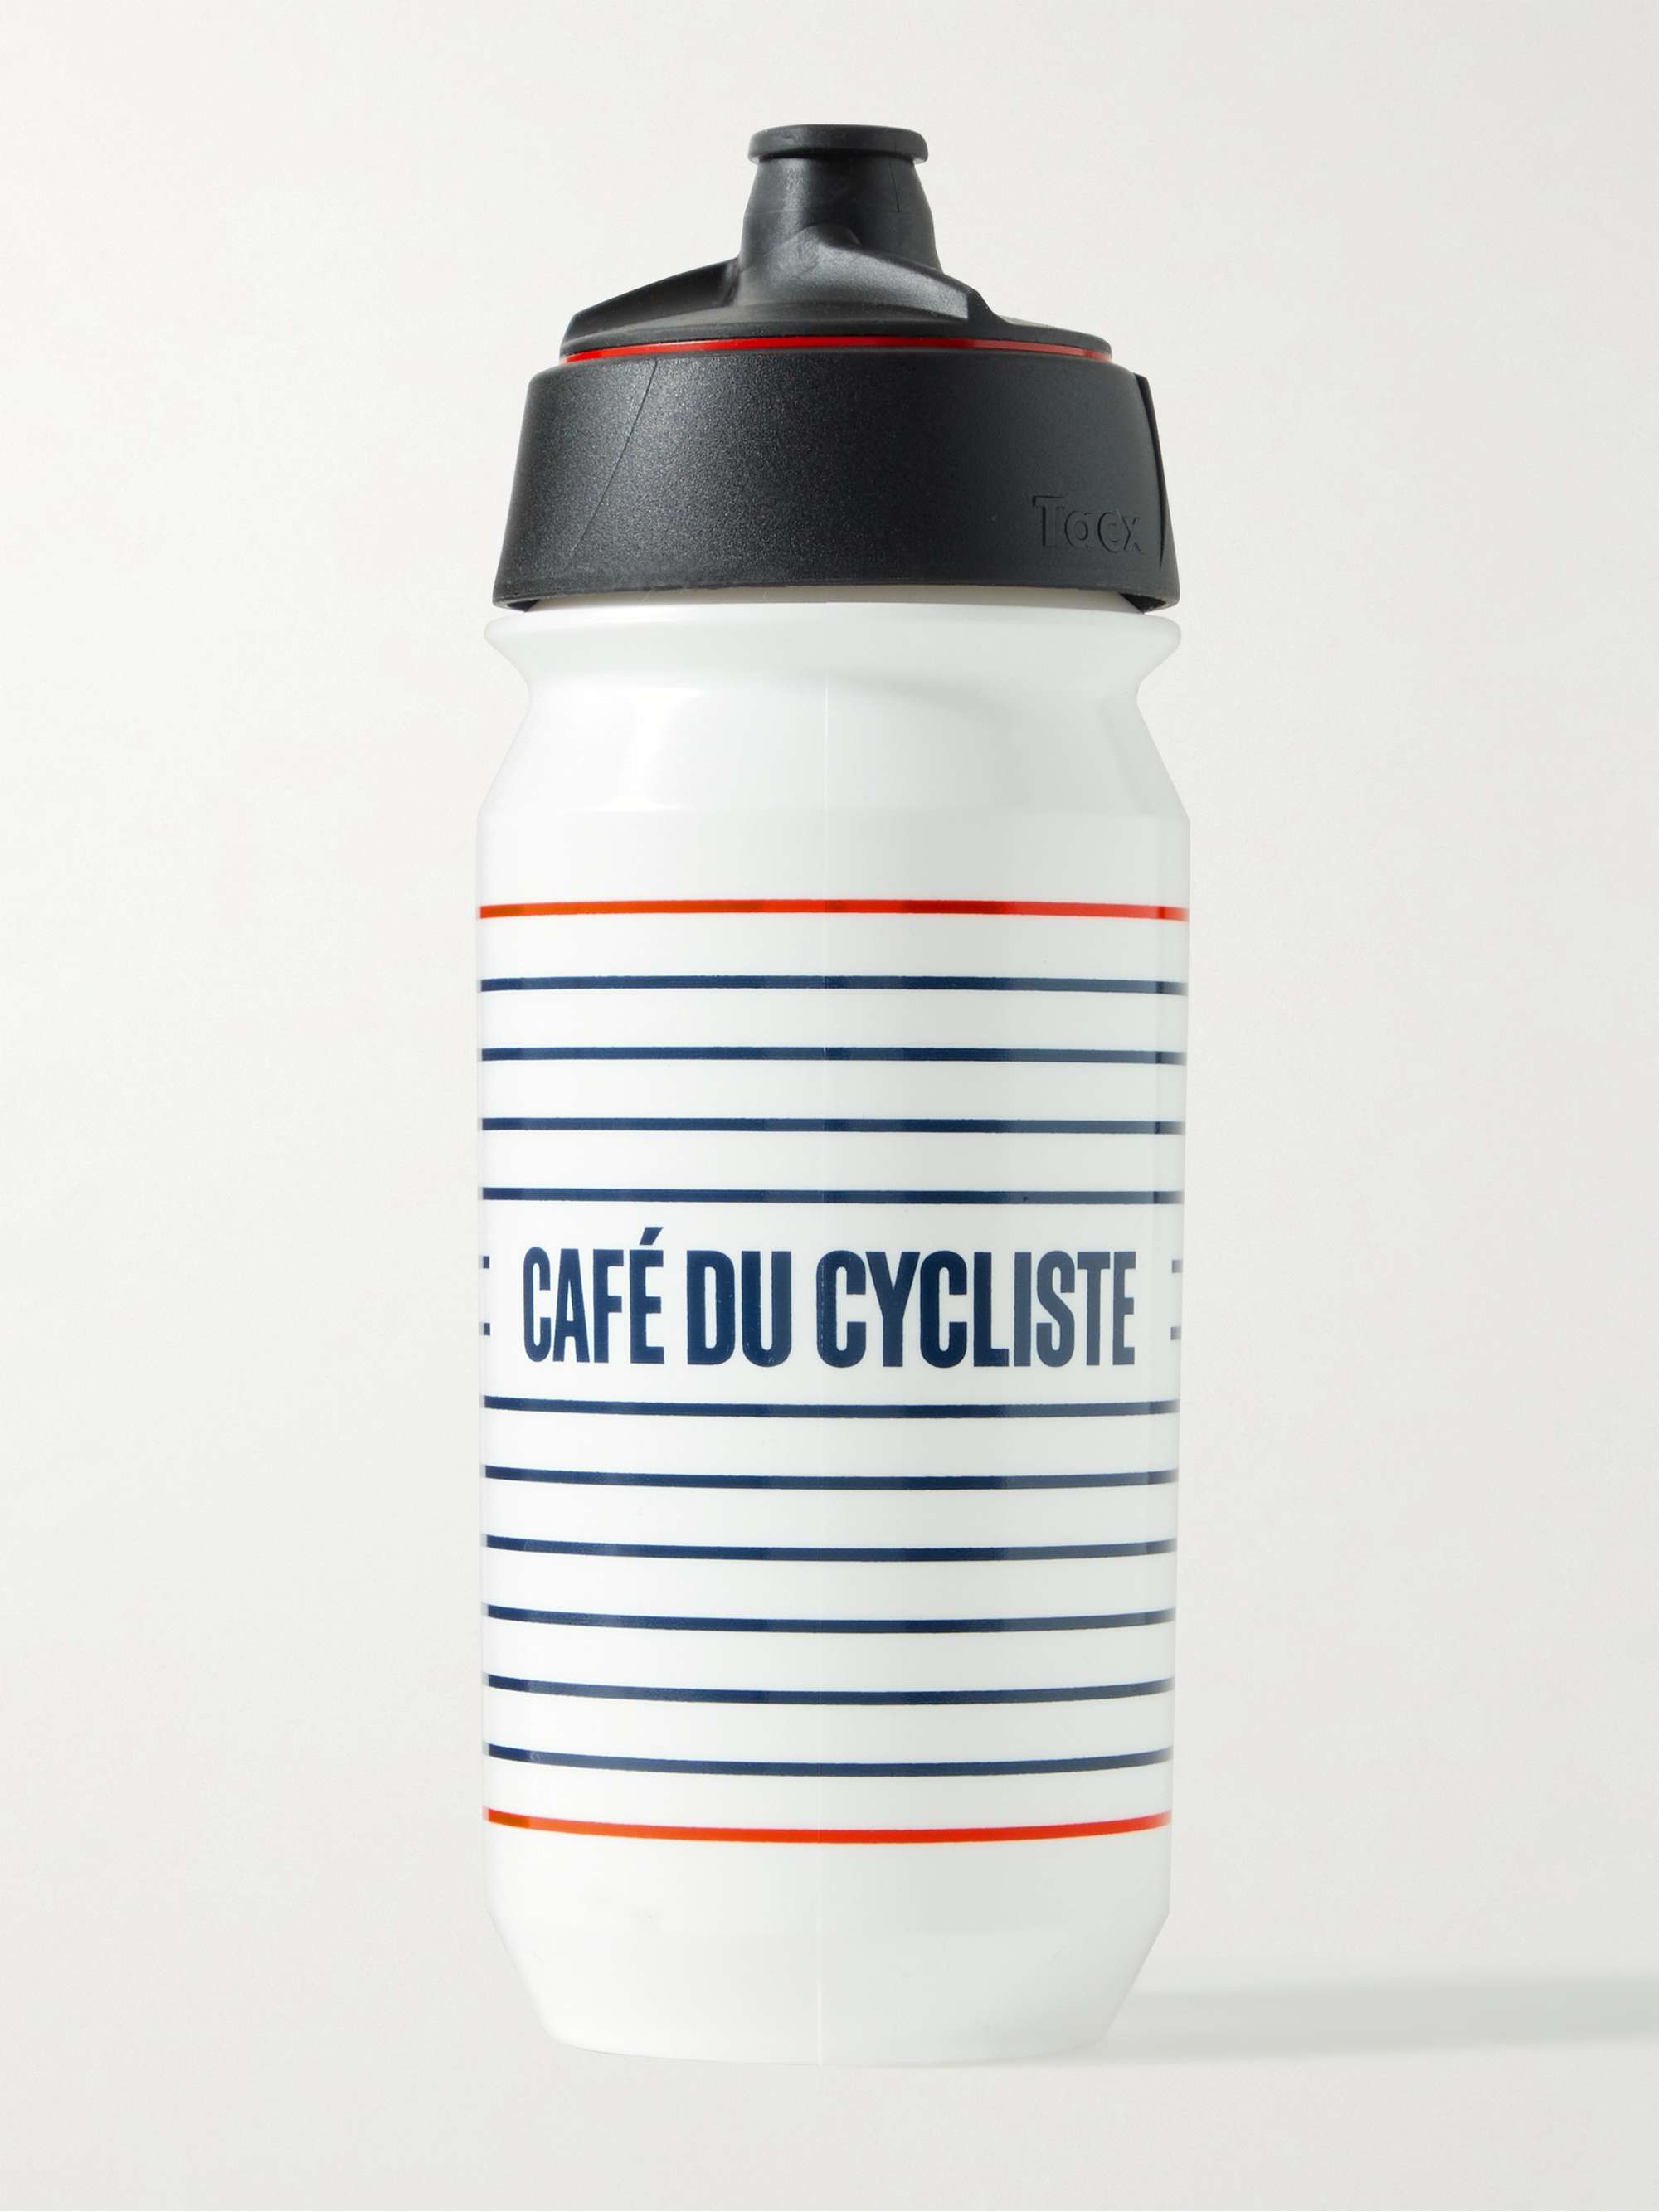 CAFE DU CYCLISTE Bidon Leak-Proof Water Bottle, 500ml for Men